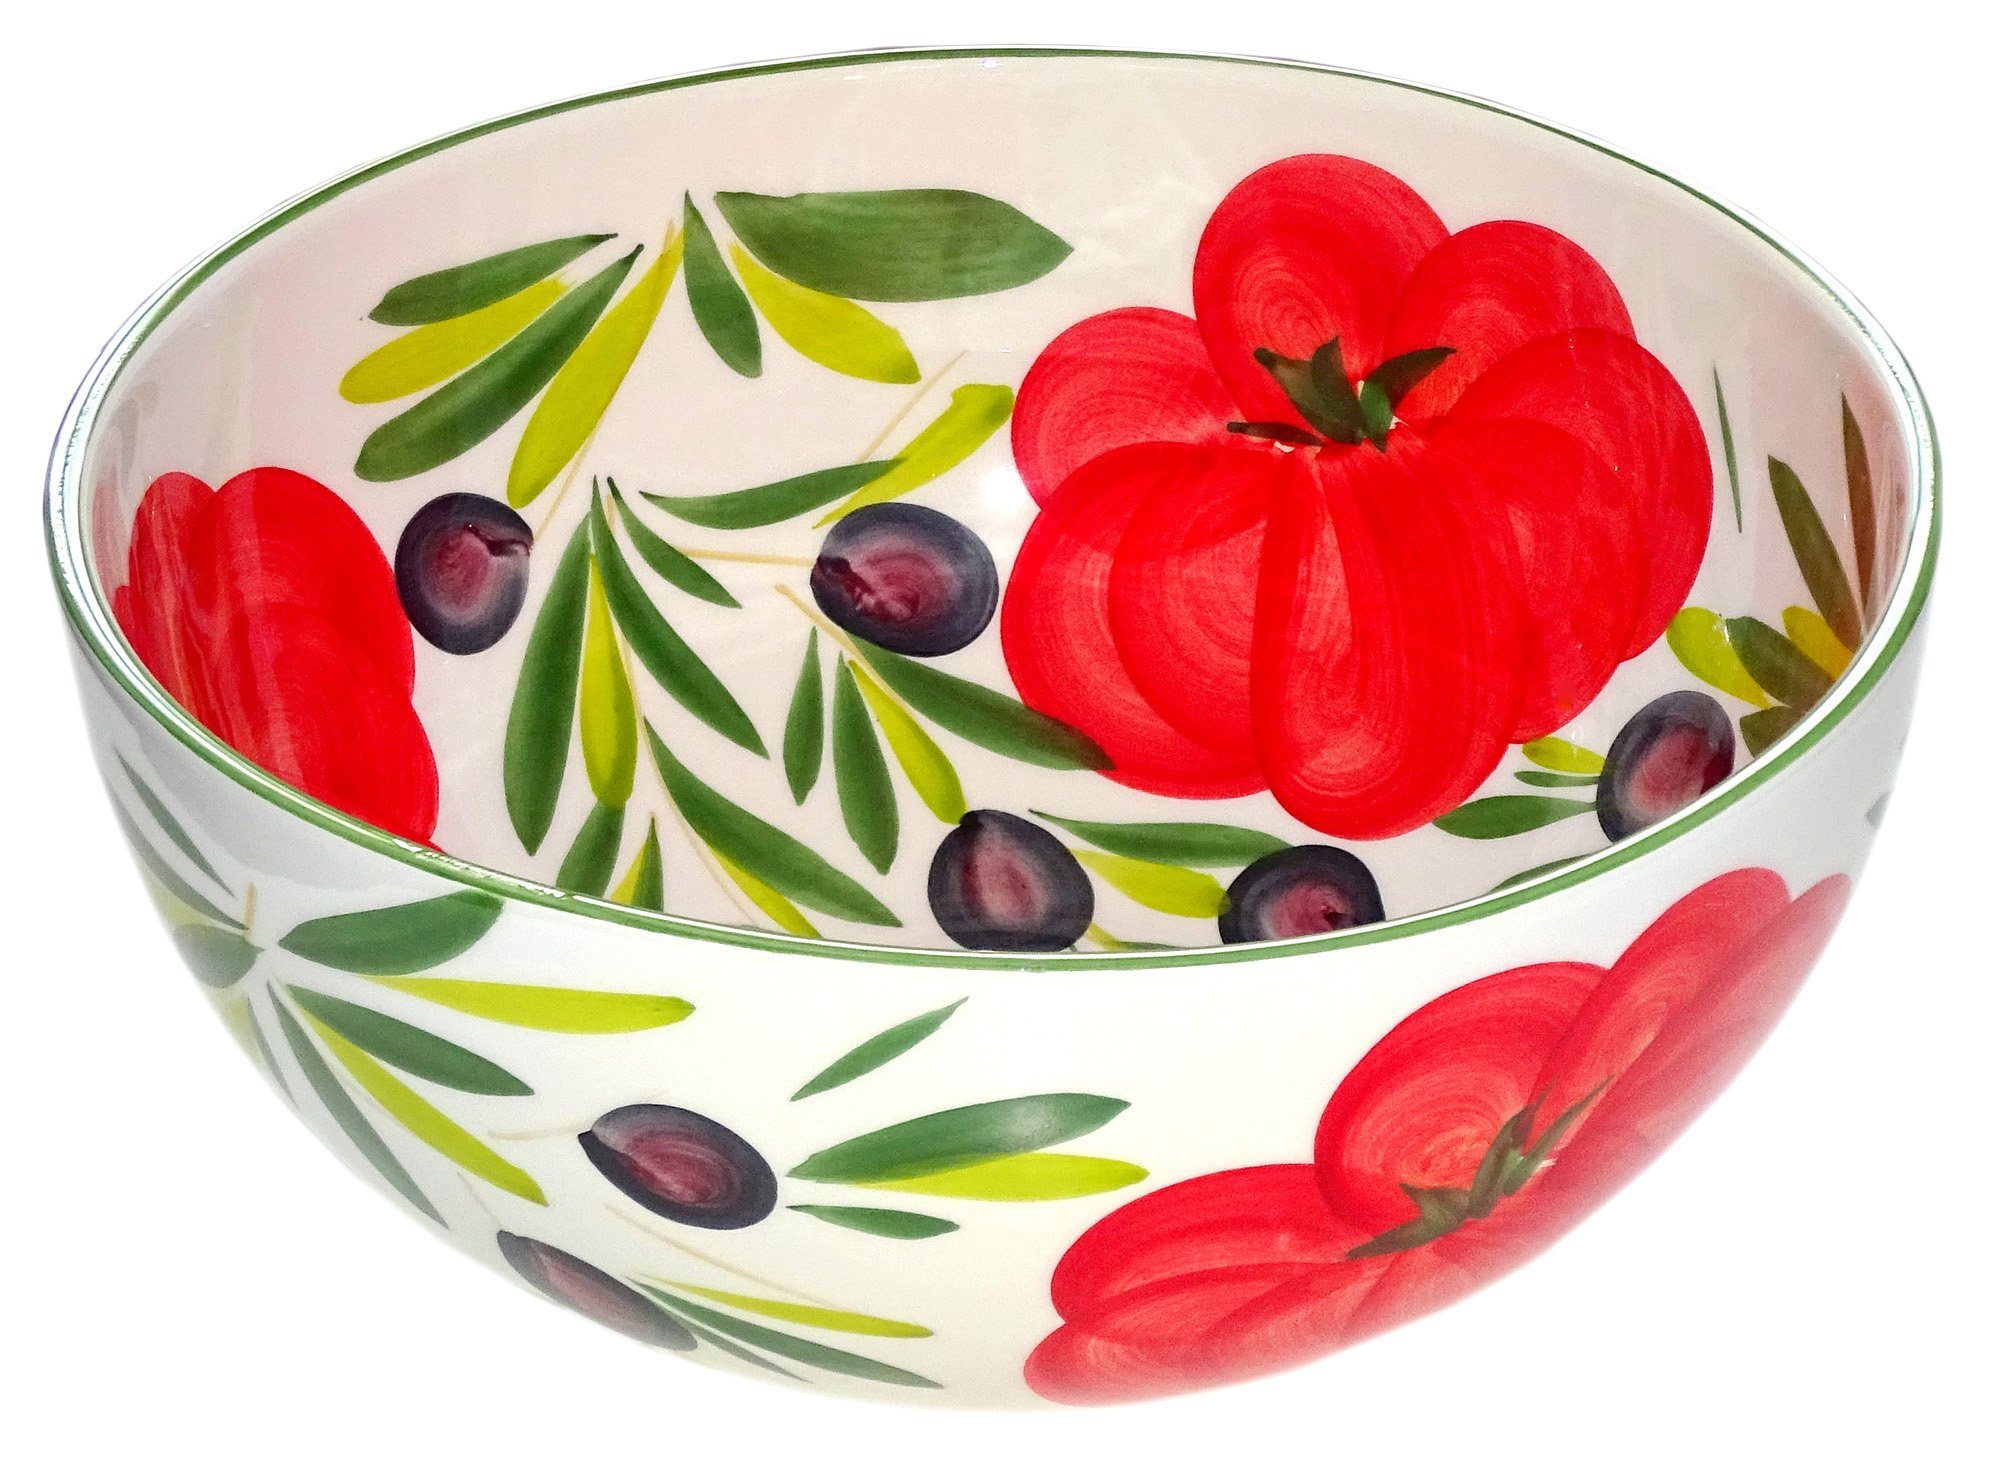 ca 25 x 25 cm 4,5 cm tief Lashuma handgemachte Salatschale aus italienischer Keramik im Tomatendesign quadratische Salatschüssel ca